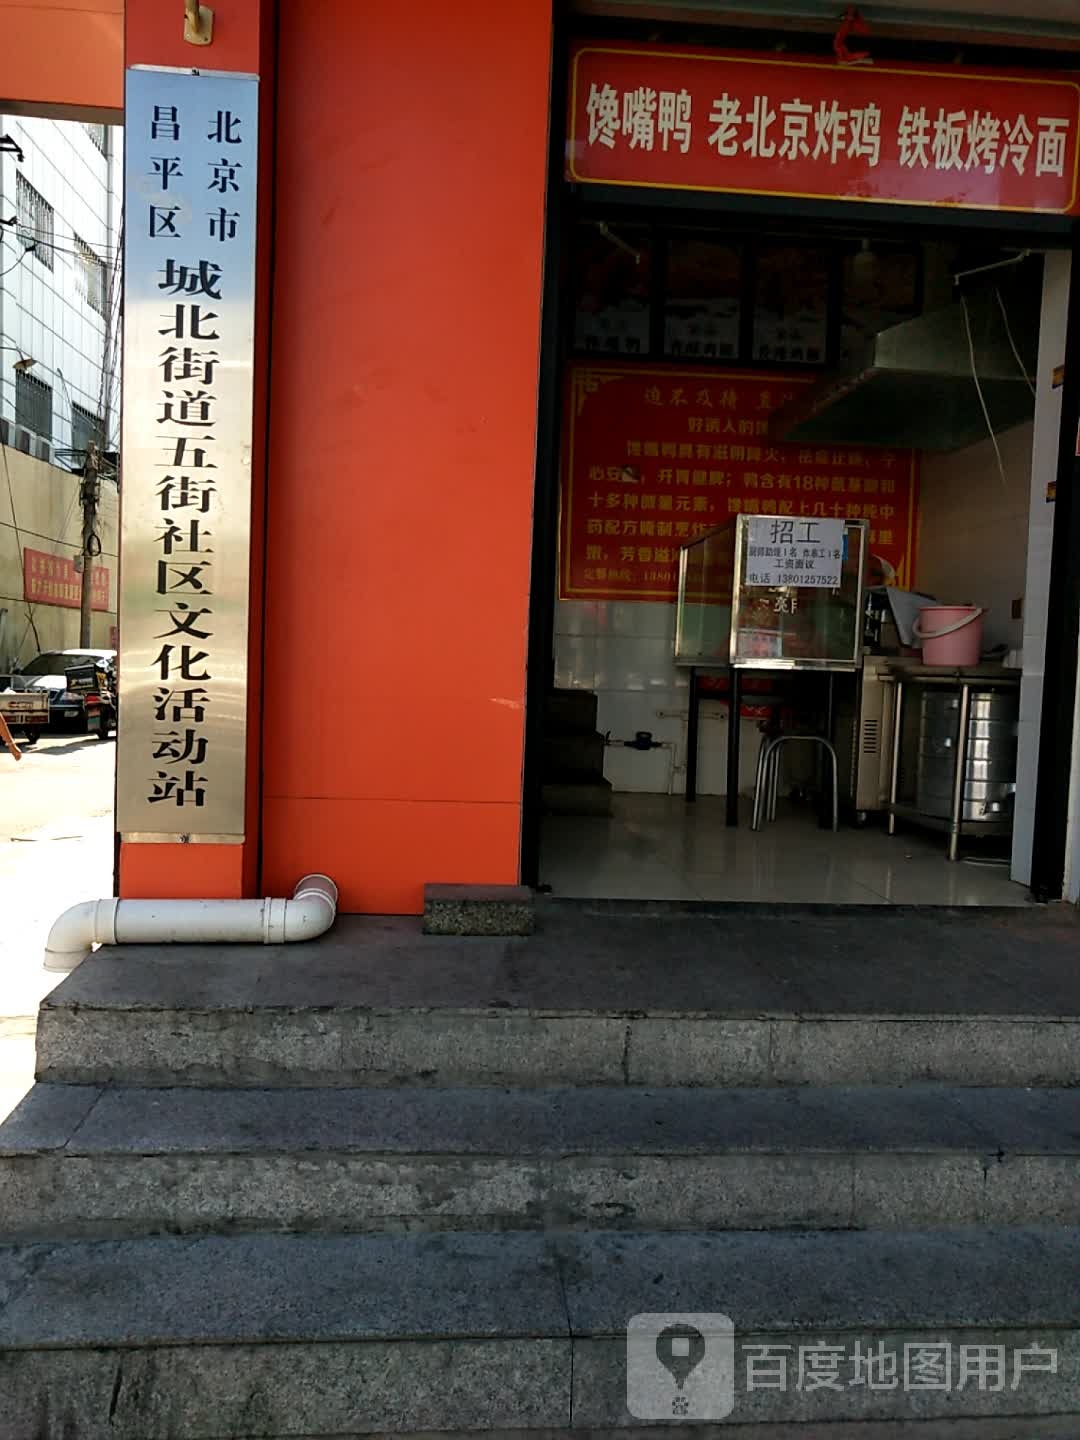 北京市昌平区商业街二毛学校西北侧约100米